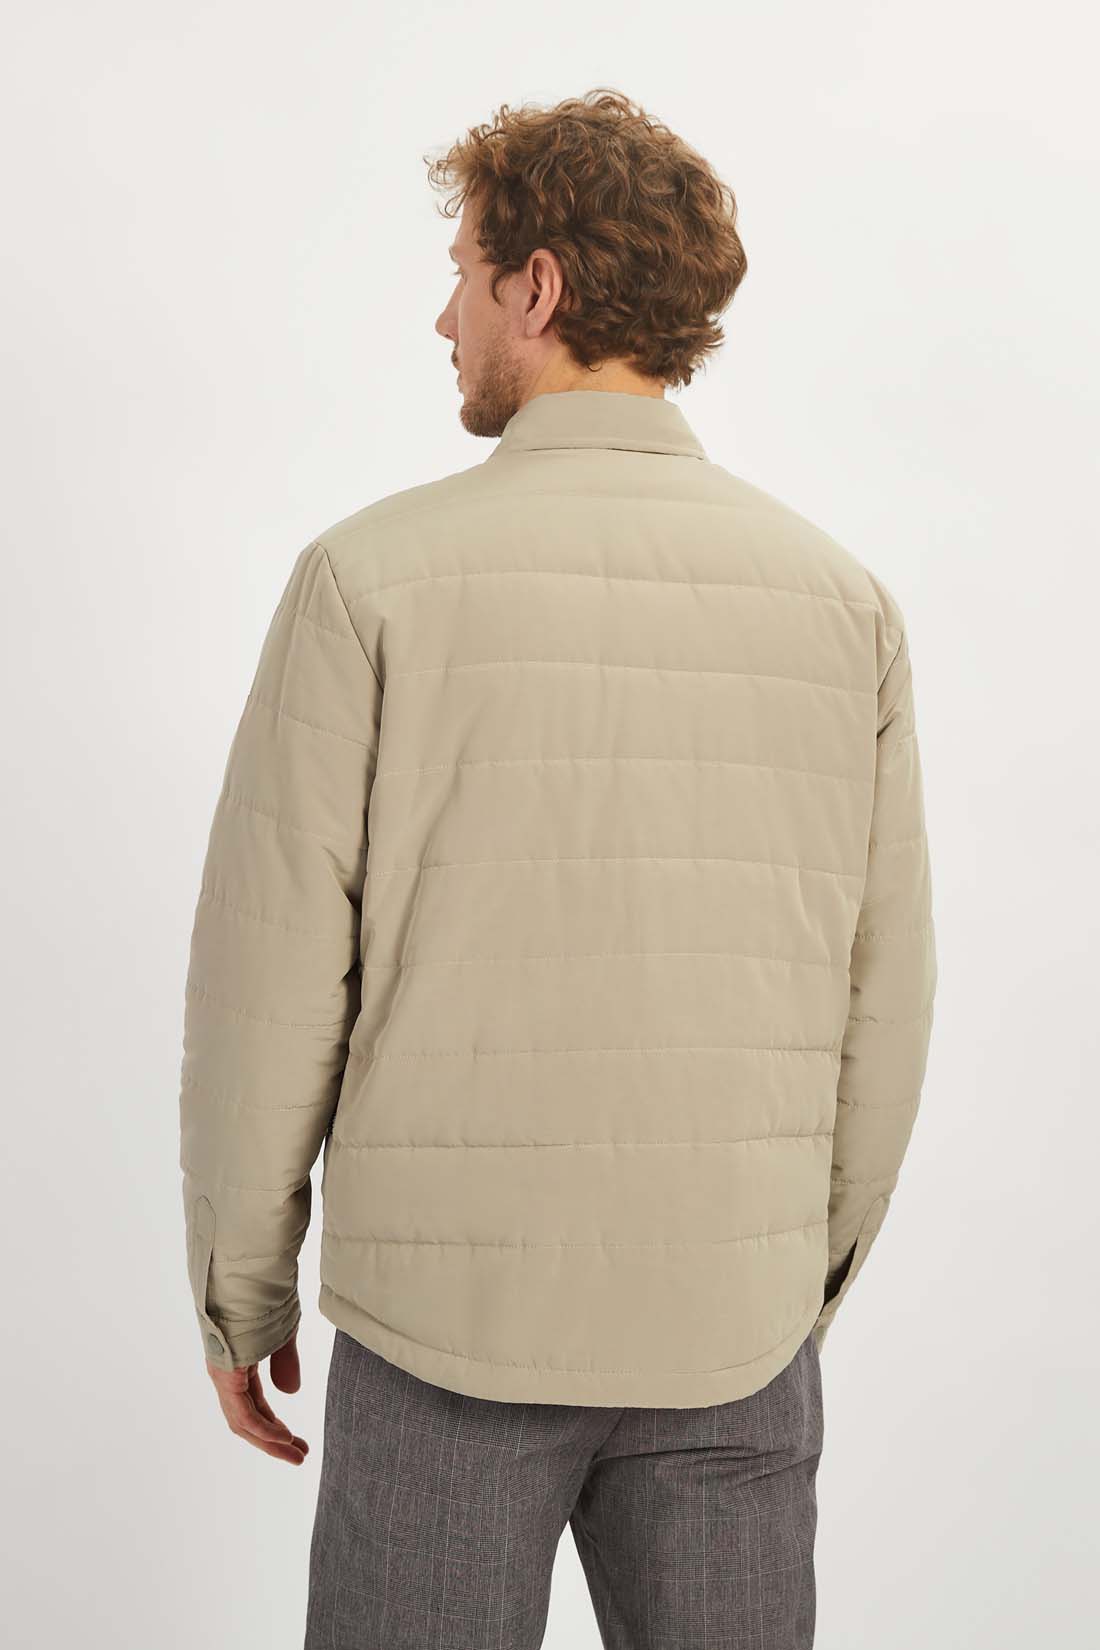 Куртка (арт. baon B5322007), размер M, цвет бежевый Куртка (арт. baon B5322007) - фото 2